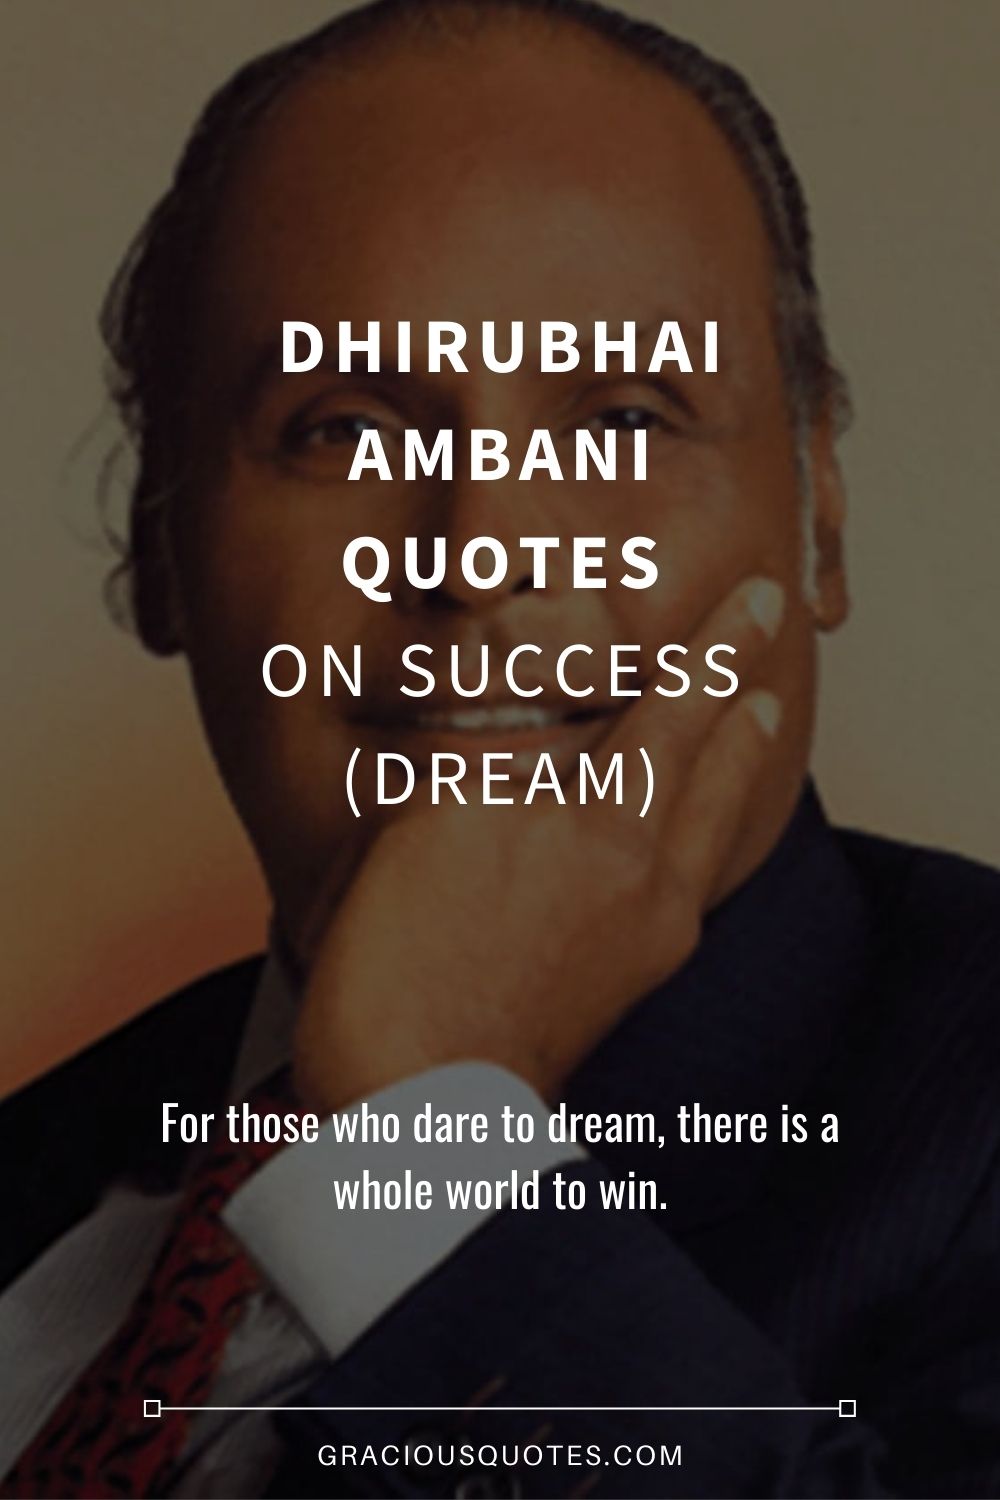 Dhirubhai Ambani Quotes on Success (DREAM) - Gracious Quotes